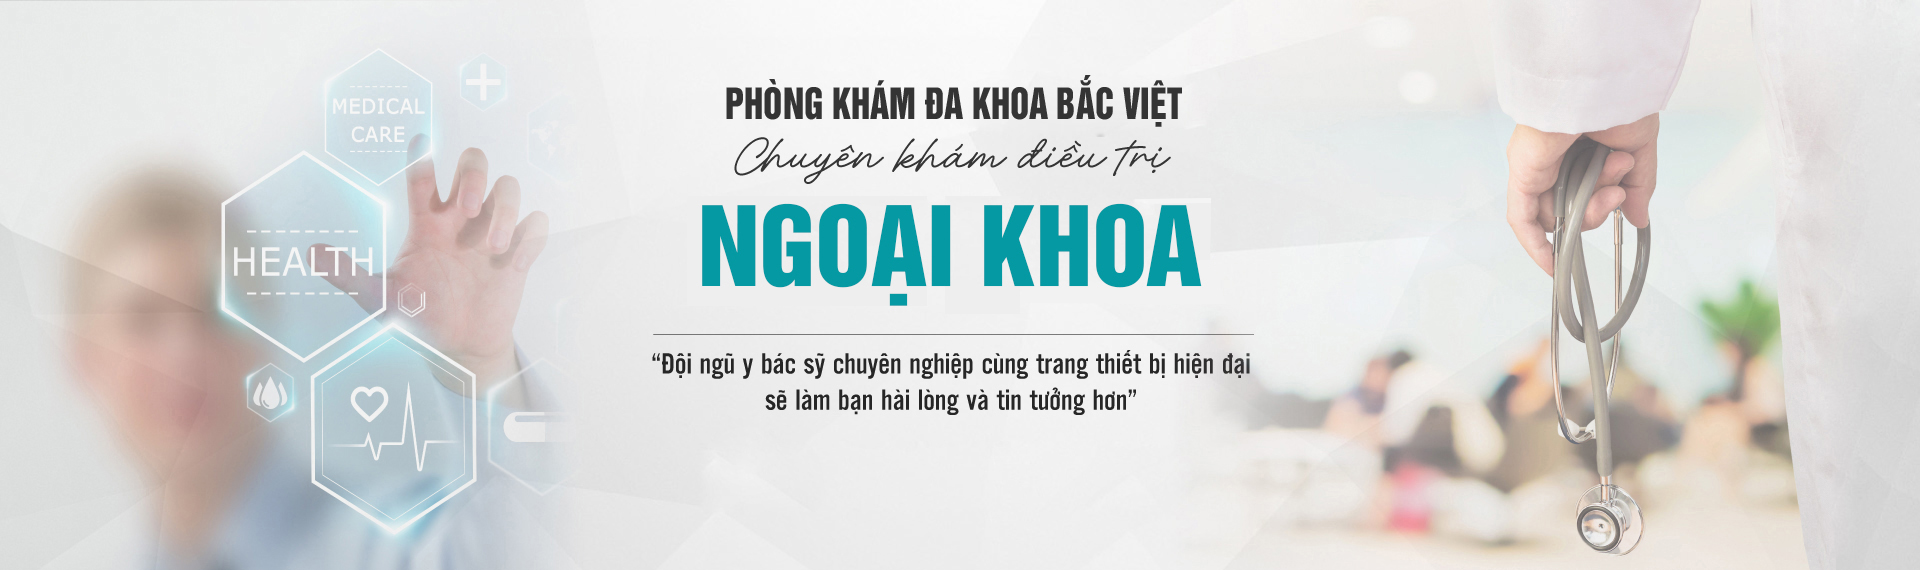 chat-luong-phong-kham-bac-viet-co-tot-khong